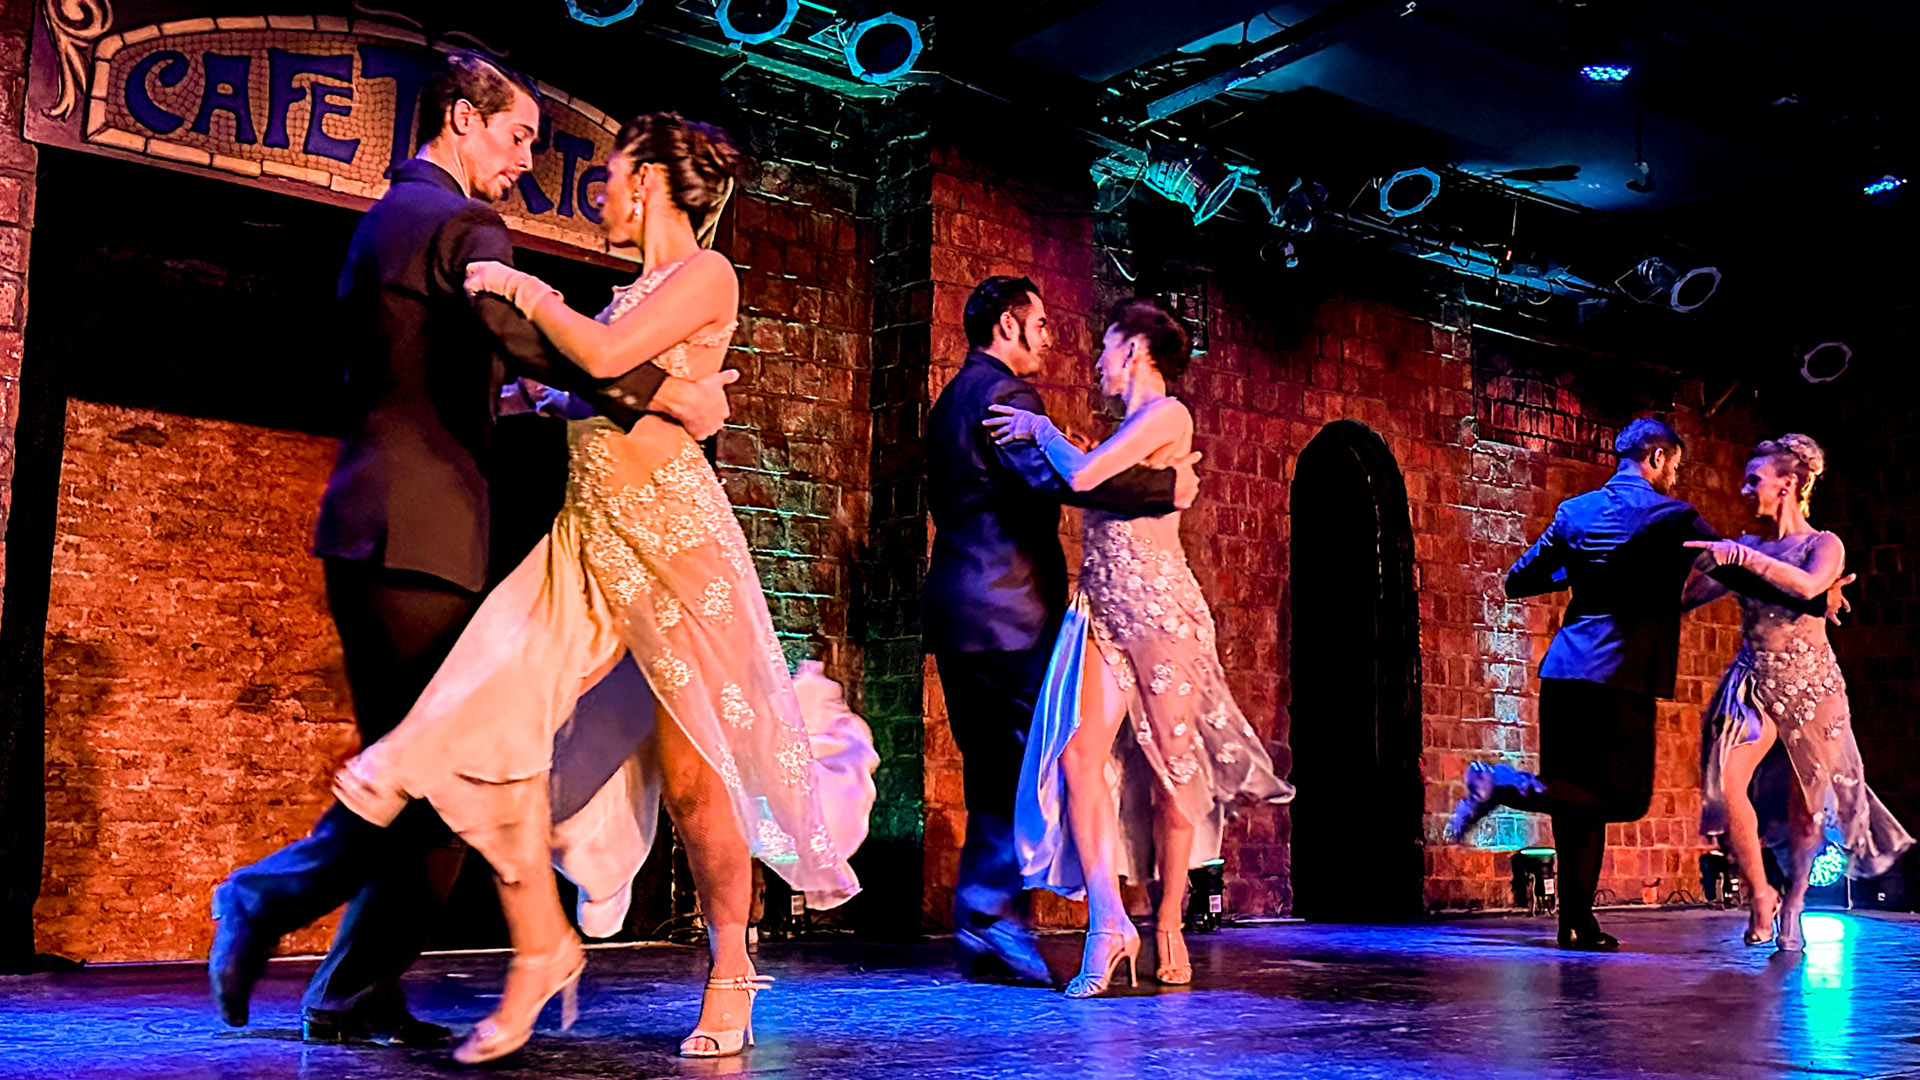 Pagamento de show de tango na Argentina